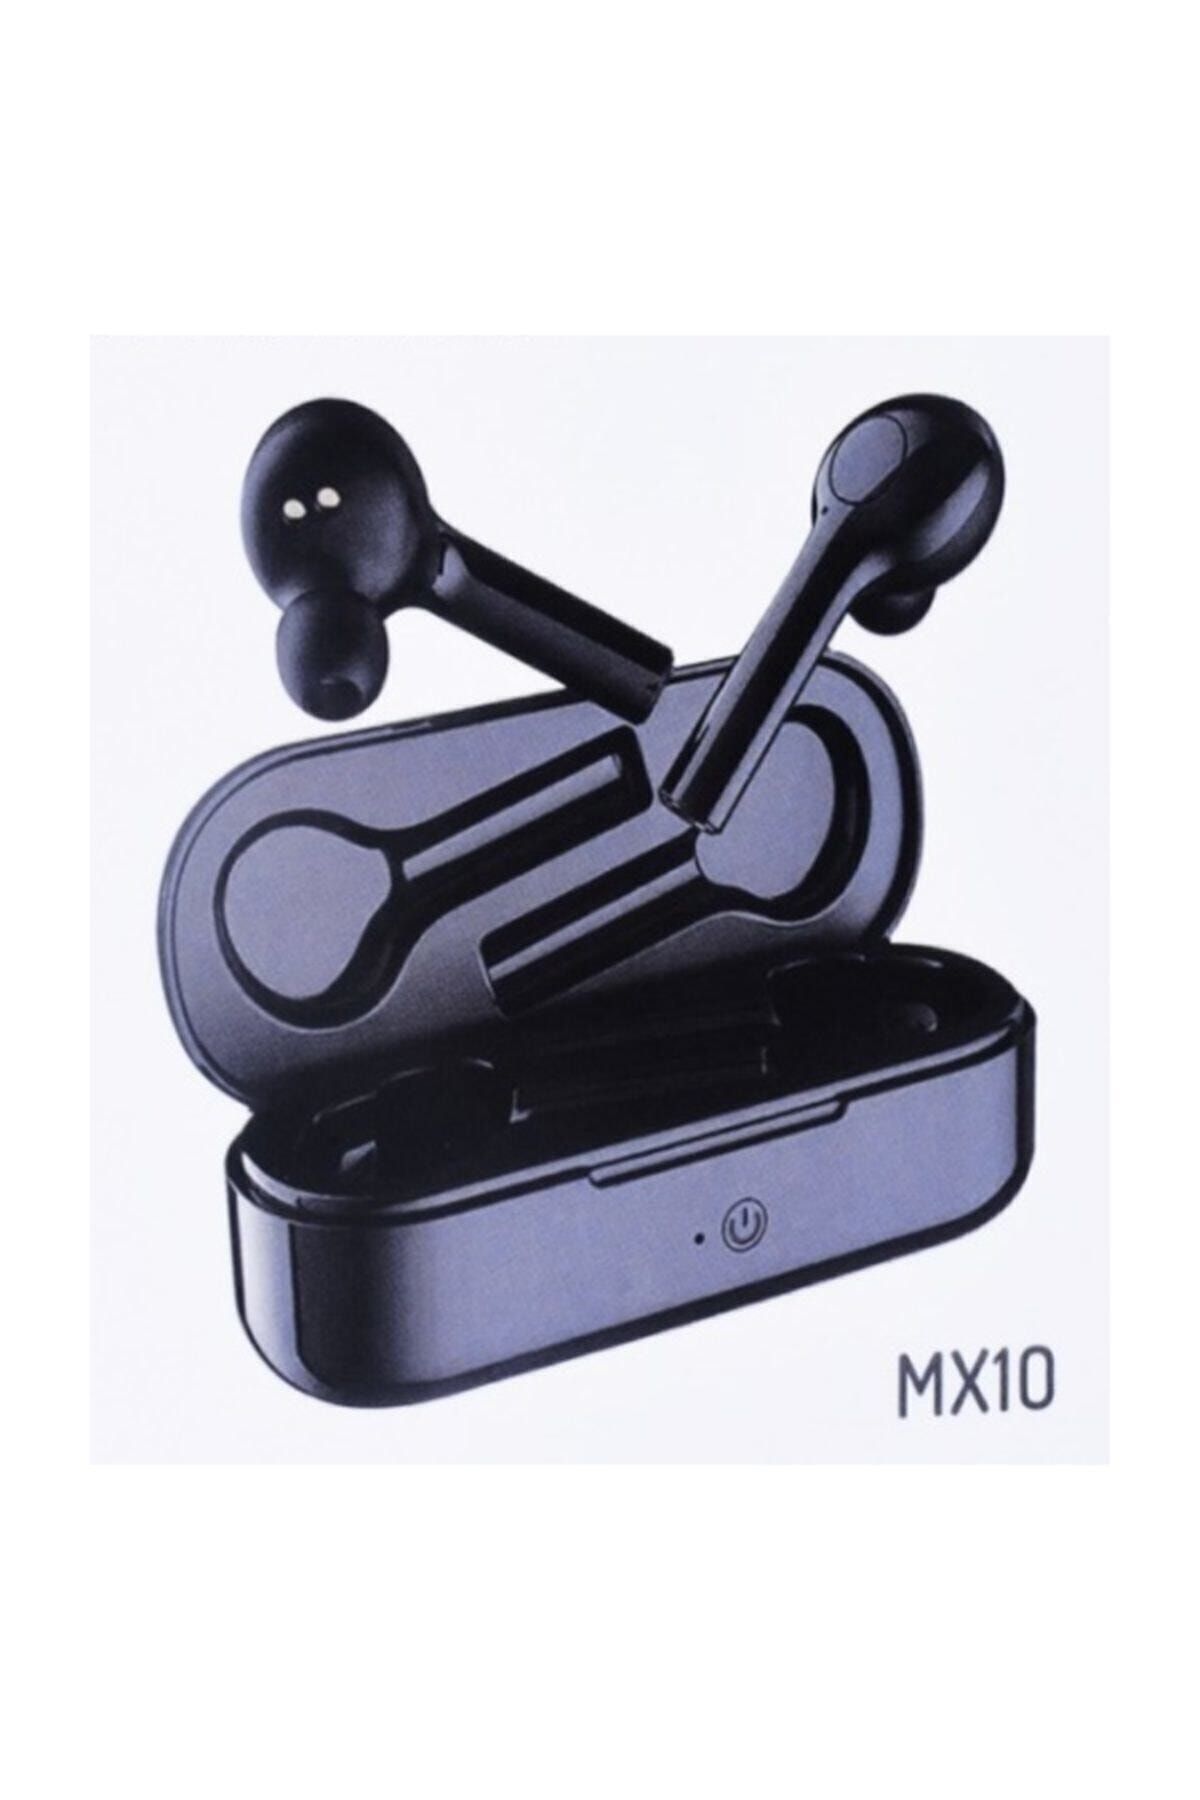 Syrox Kablosuz Bluetooth 5.0 Kulakiçi Kulaklık Mx10 Beyaz